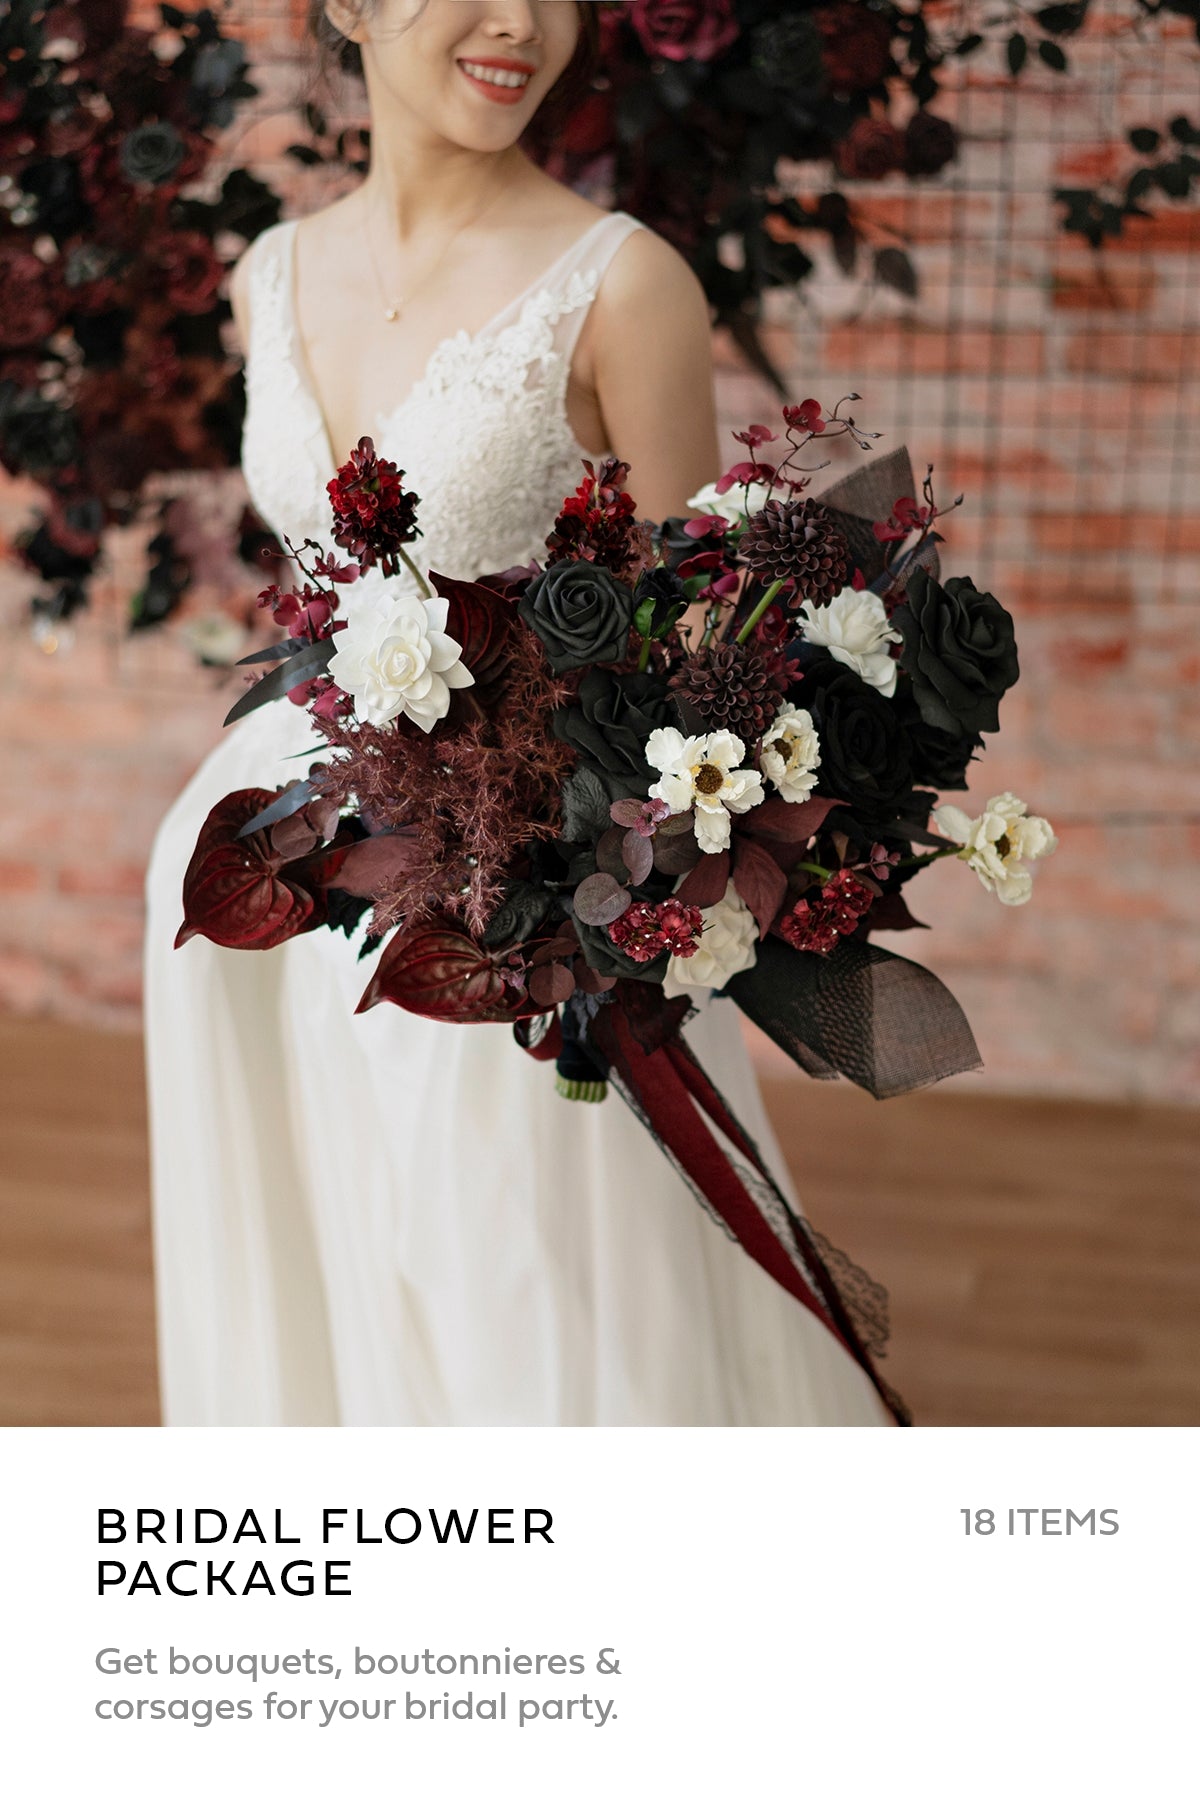 Pre-Arranged Wedding Flower Packages in Moody Burgundy & Black